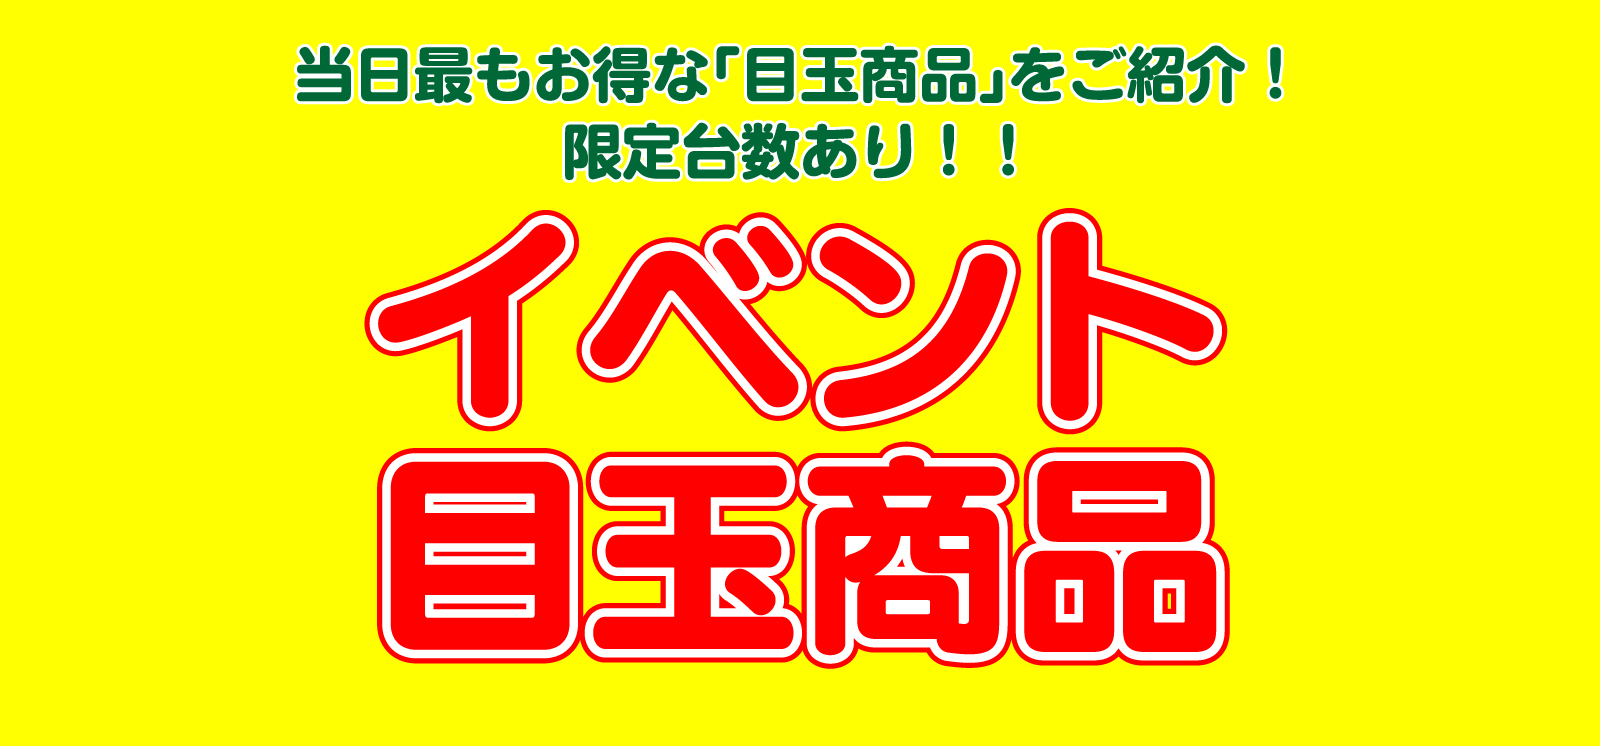 仙台のリフォーム専門店 ダイクショールーム 白石市民リフォームフェア イベント目玉商品